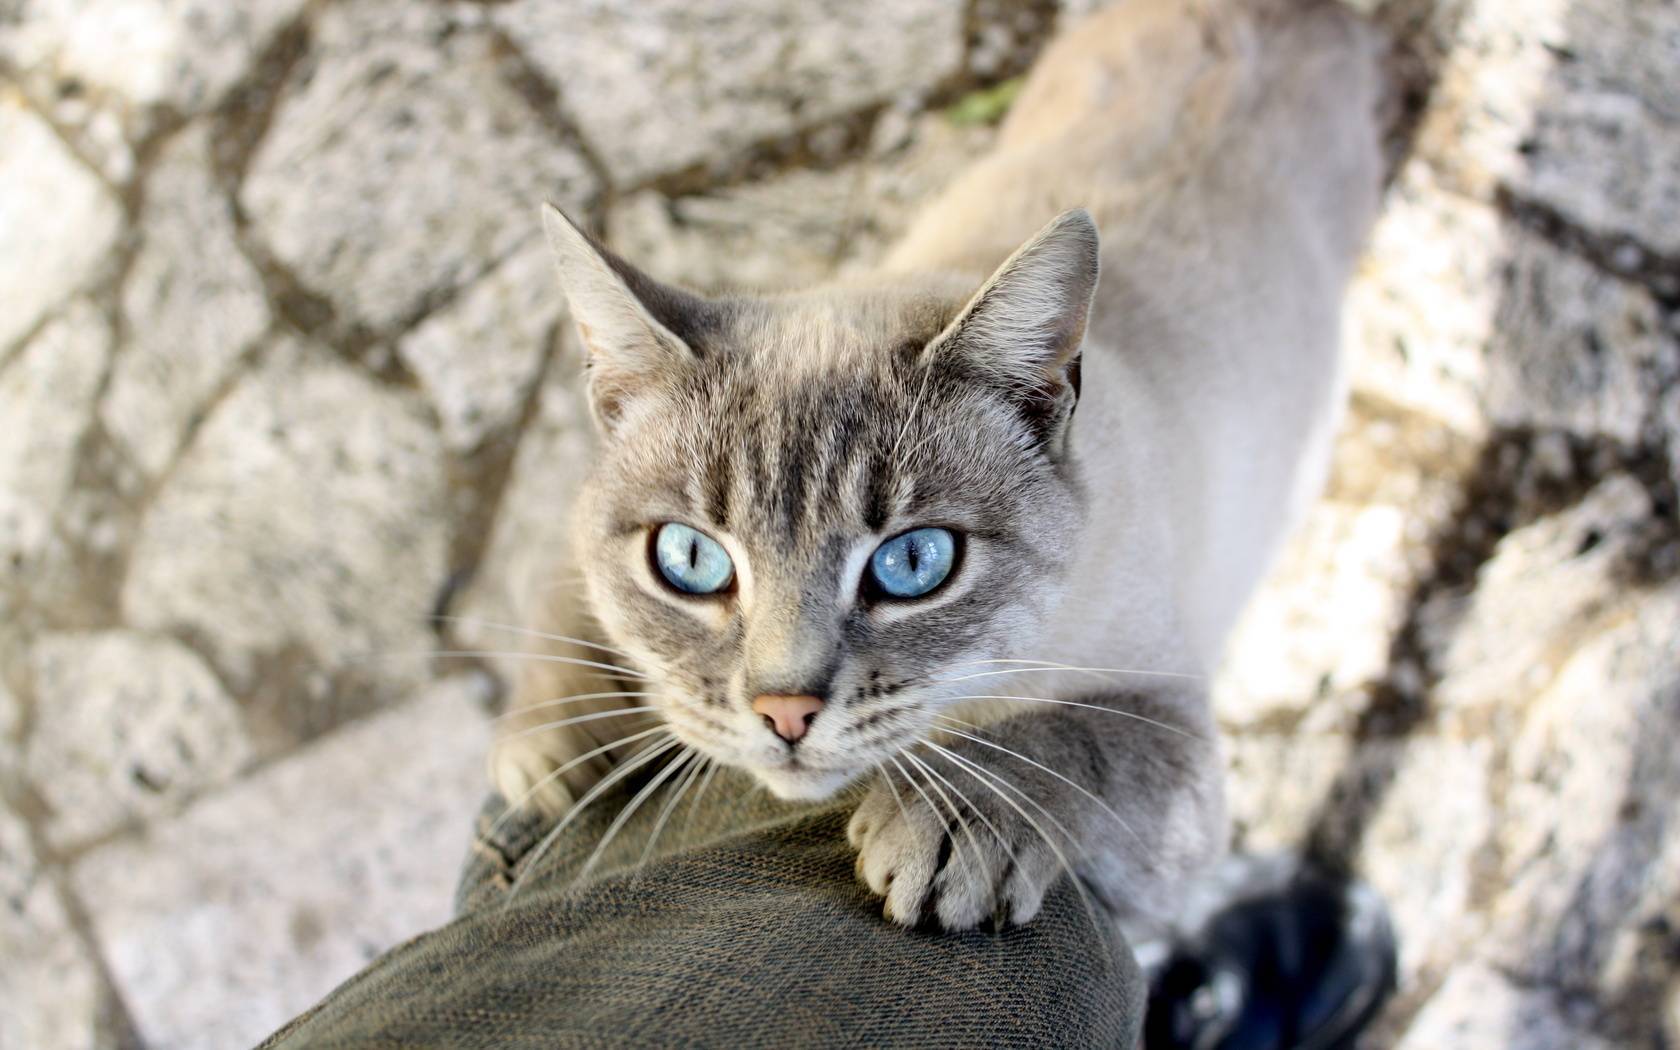 Описание охоса азулеса: фото кошки, отличительные особенности породы, содержание и уход